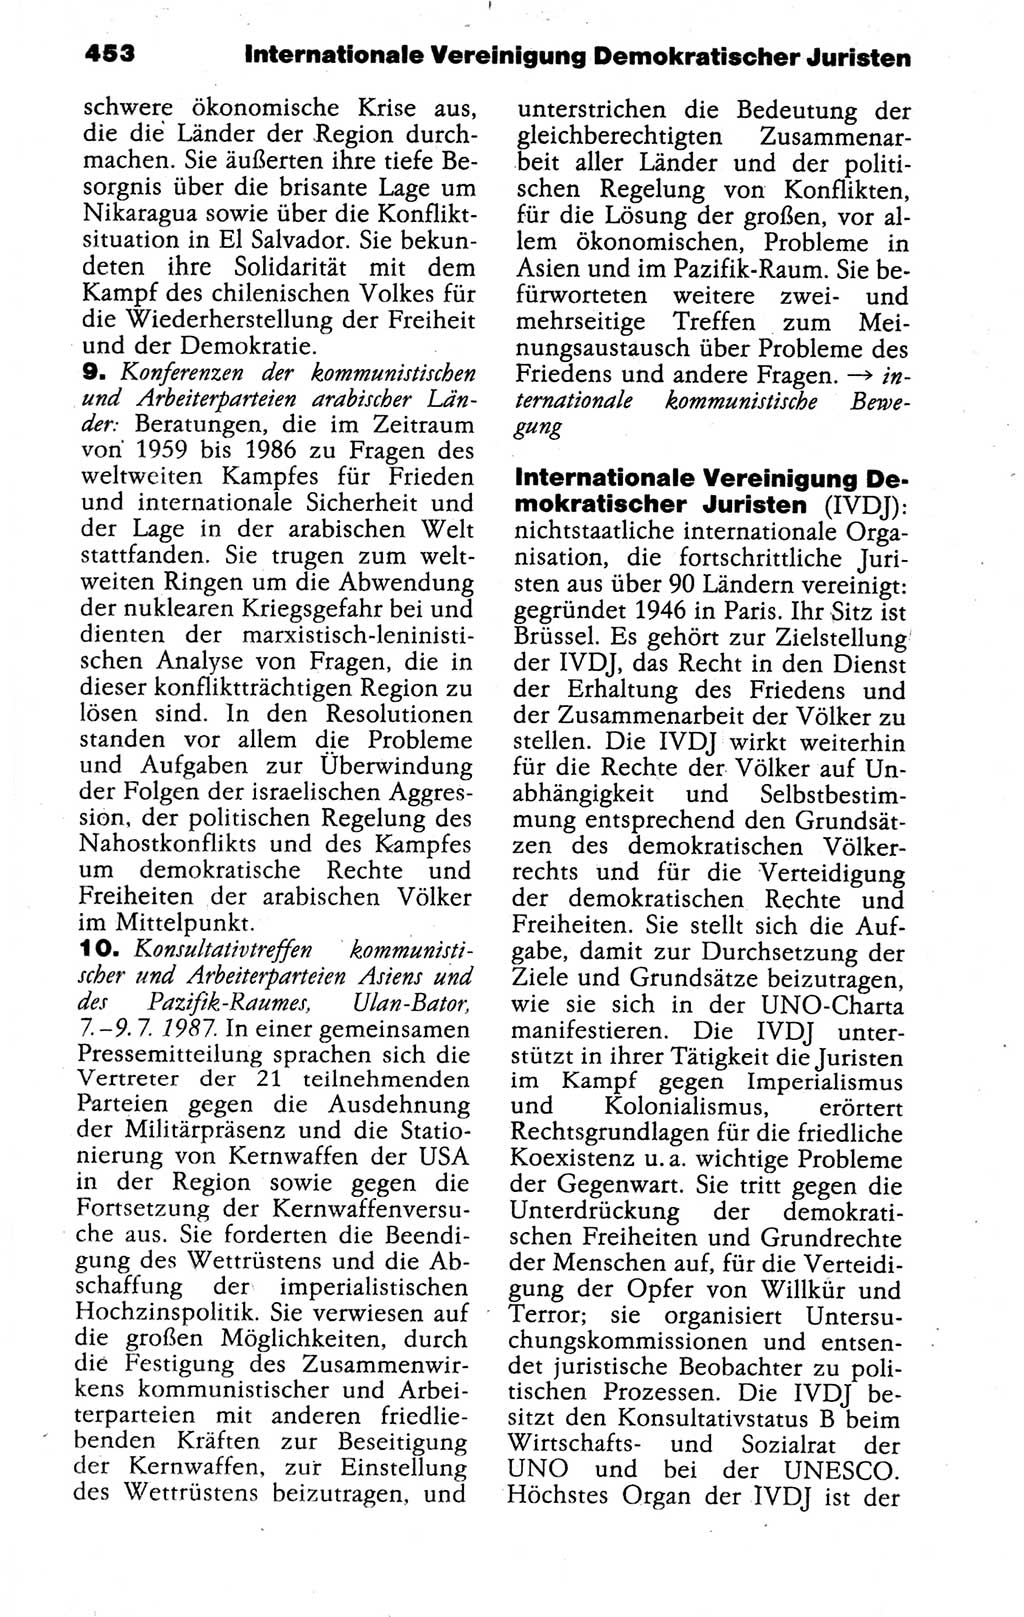 Kleines politisches Wörterbuch [Deutsche Demokratische Republik (DDR)] 1988, Seite 453 (Kl. pol. Wb. DDR 1988, S. 453)